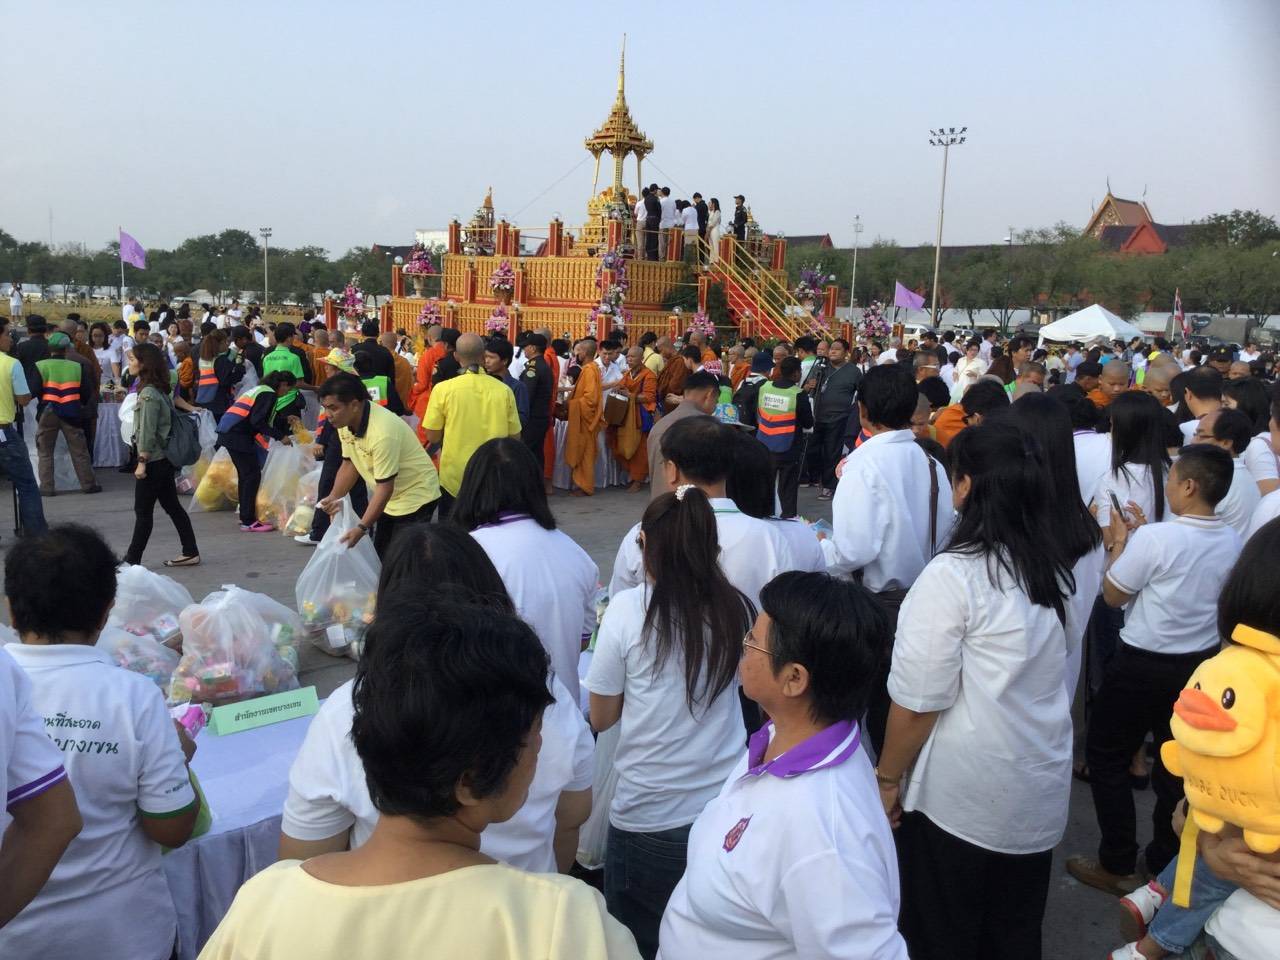 ประชาชนจำนวนมากร่วมงานสัปดาห์เผยแผ่พระพุทธศาสนาที่ท้องสนามหลวง